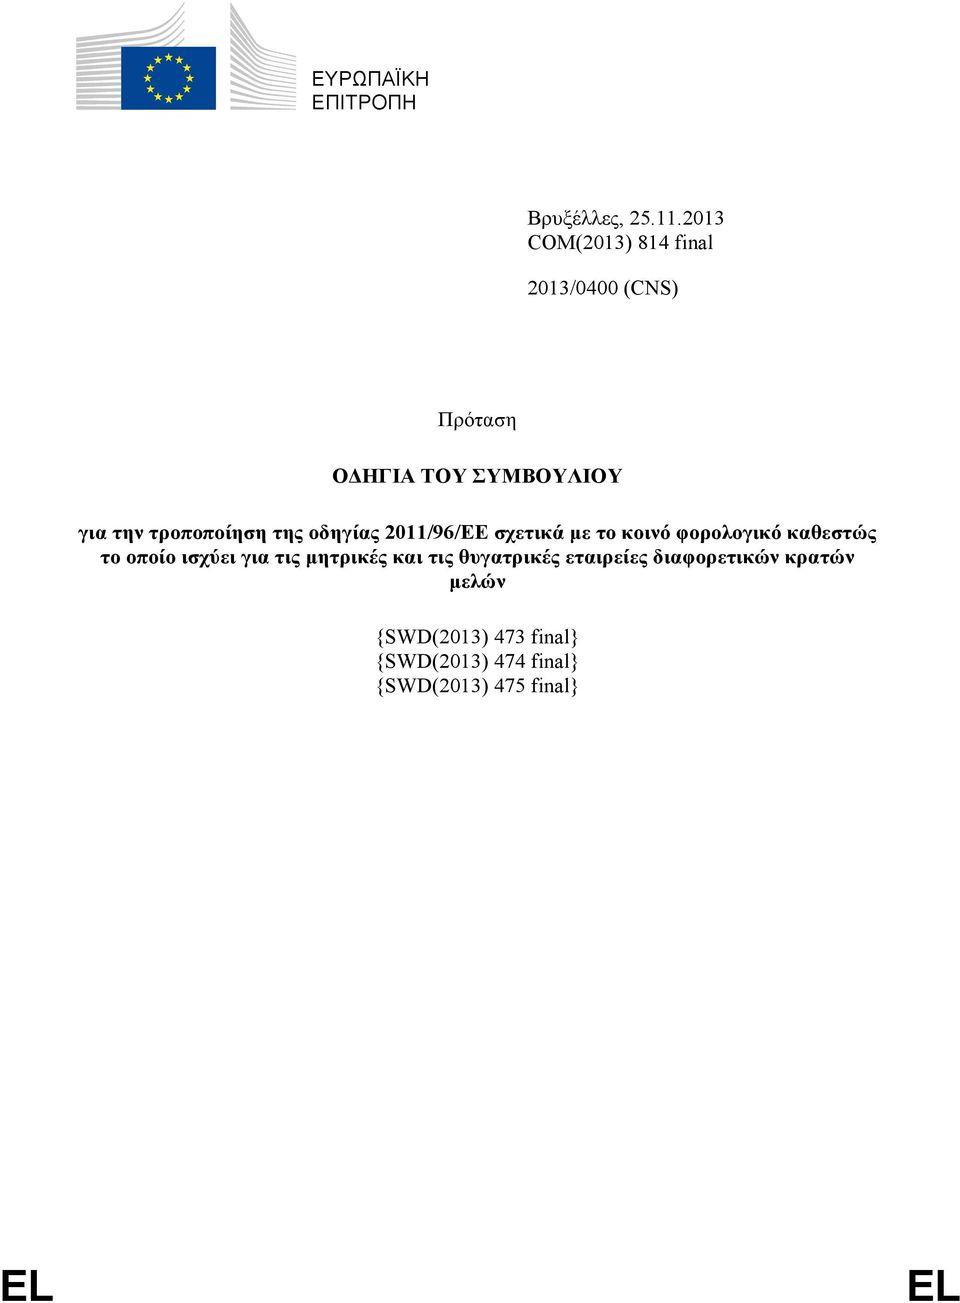 τροποποίηση της οδηγίας 2011/96/EΕ σχετικά με το κοινό φορολογικό καθεστώς το οποίο